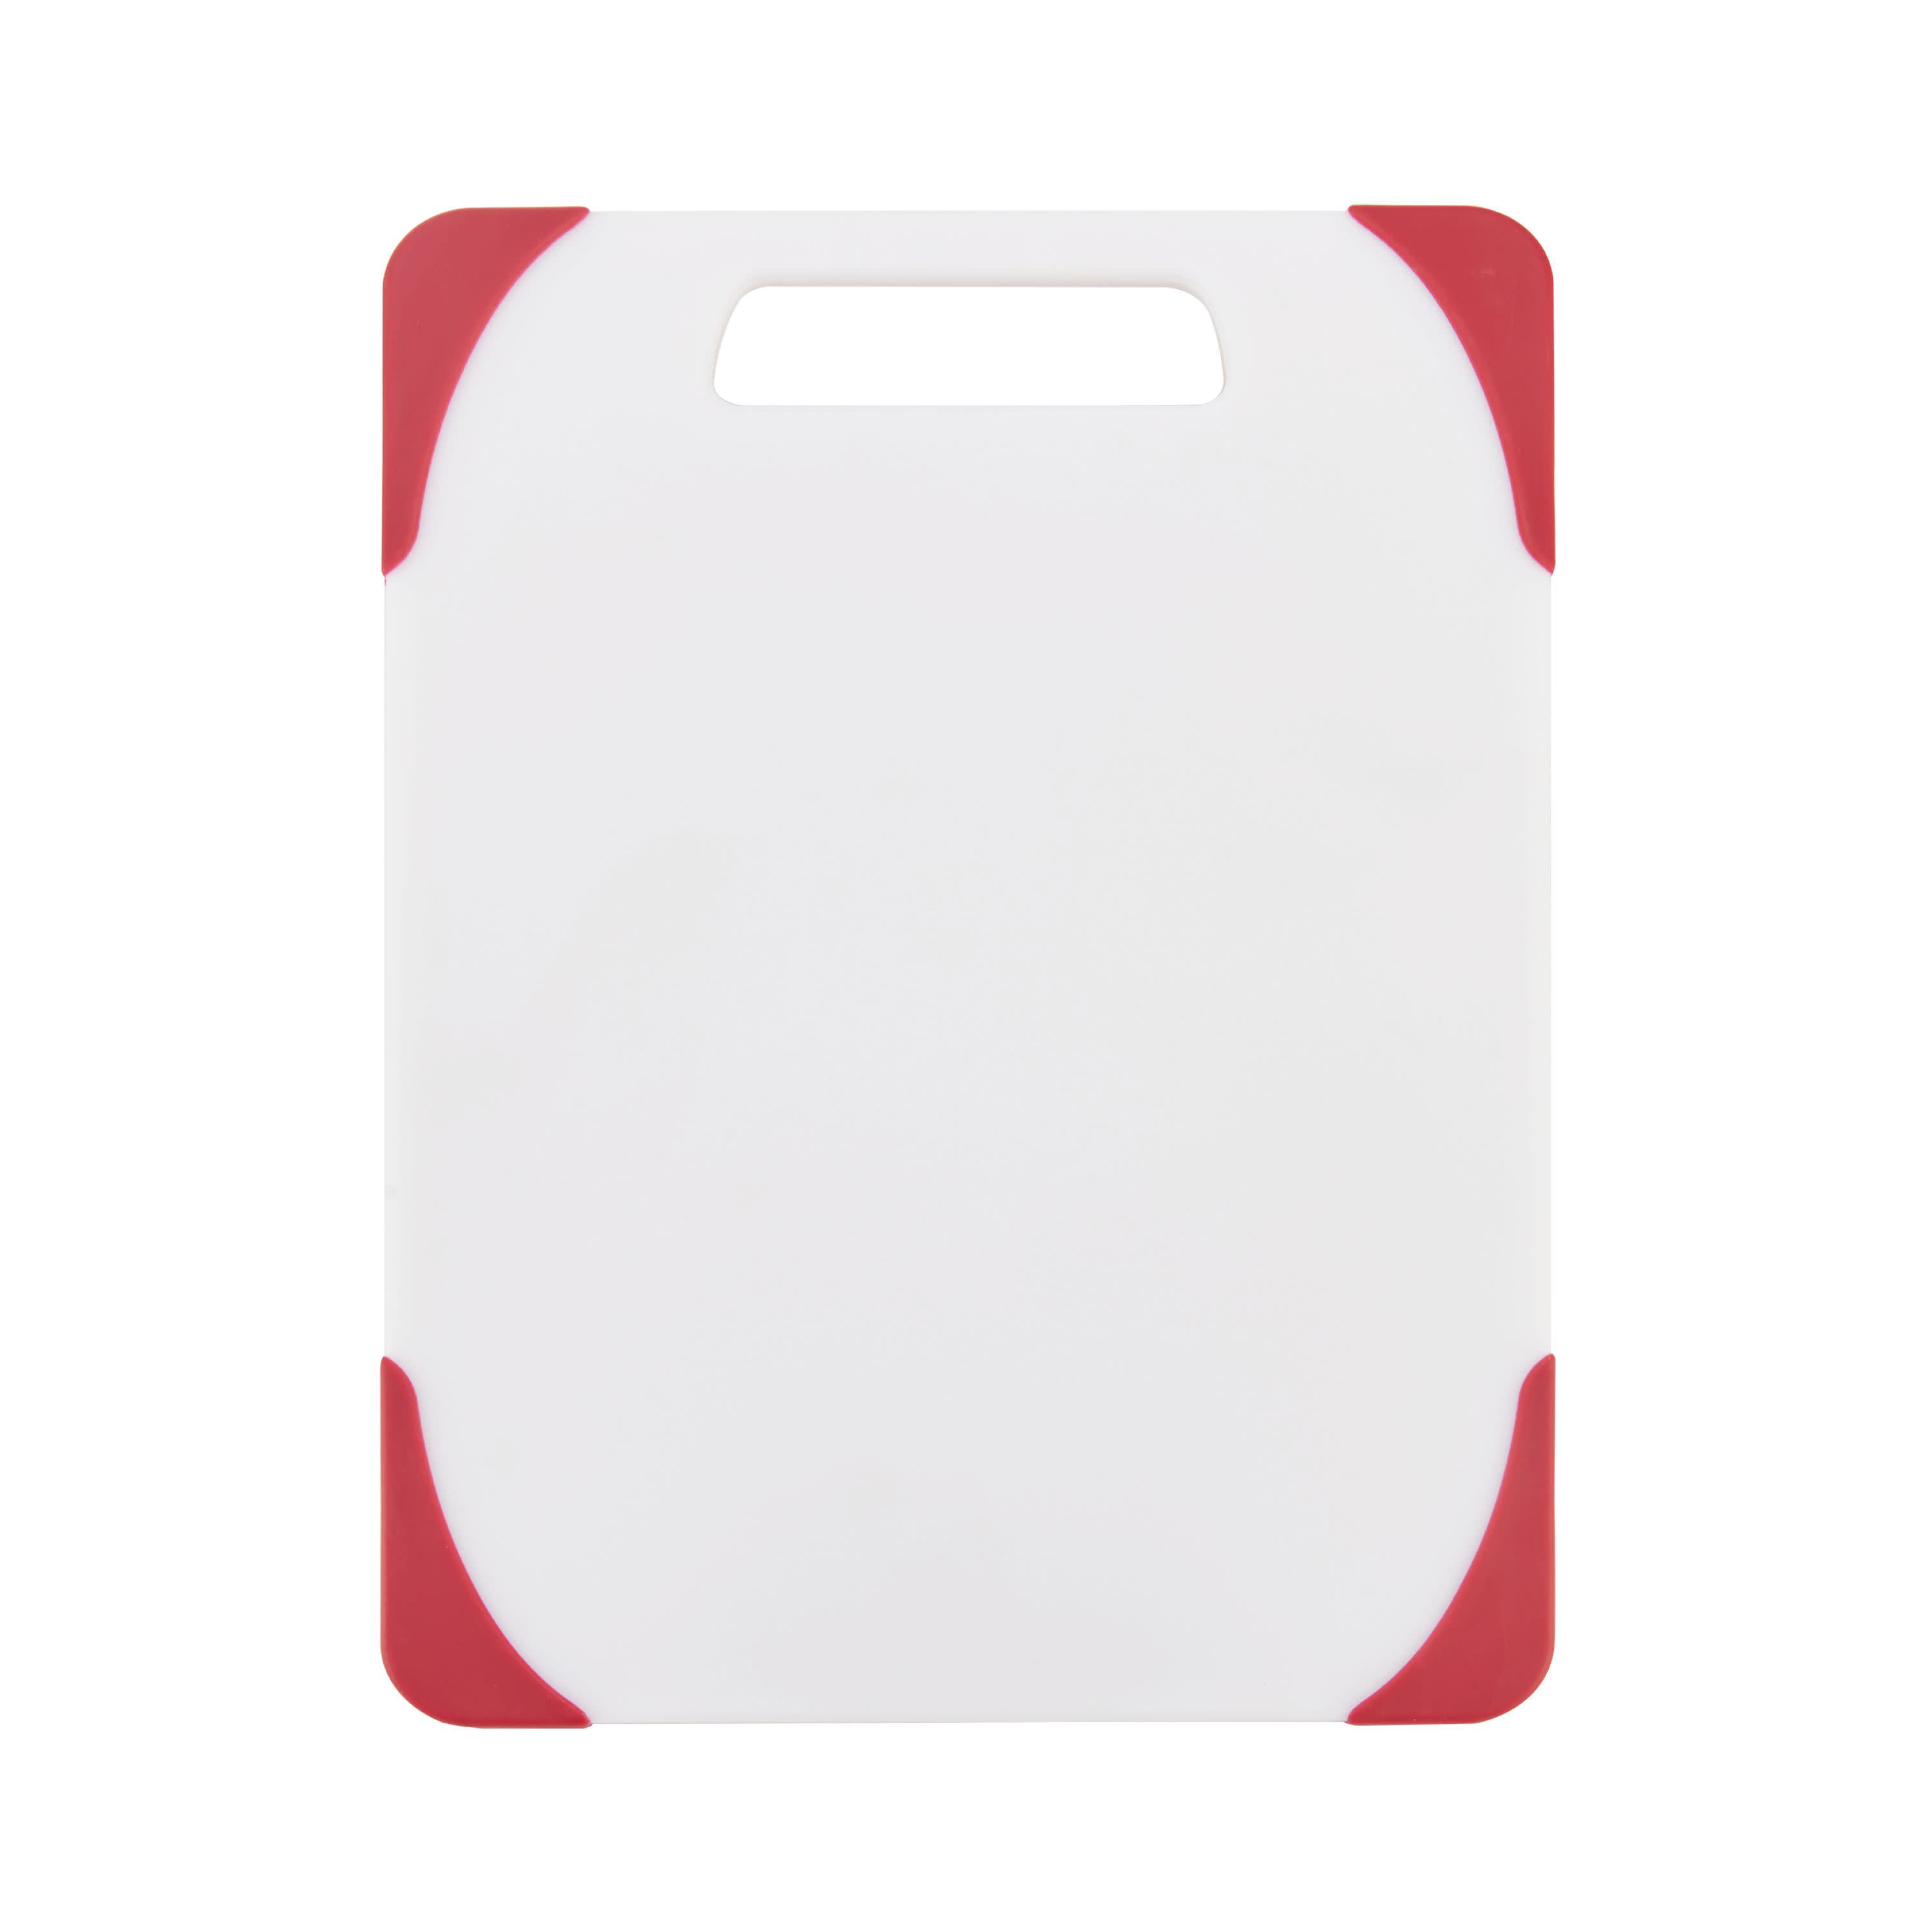 Brand New FARBERWARE 8.5"x11" White Poly Cutting Board Non-Absorbent Non-Porus